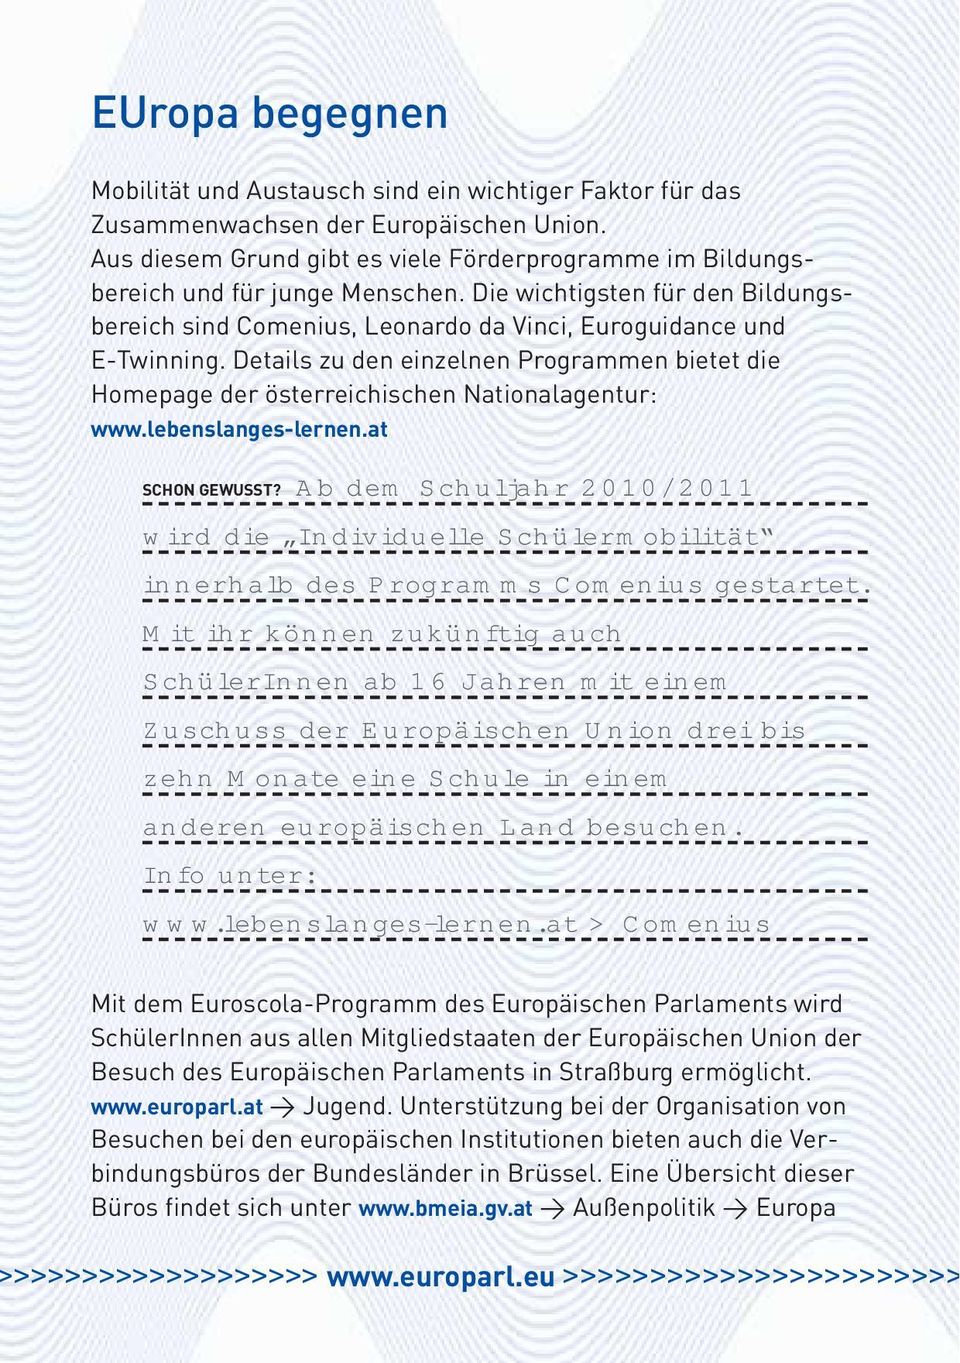 Details zu den einzelnen Programmen bietet die Homepage der österreichischen Nationalagentur: www.lebenslanges-lernen.at SCHON GEWUSST?